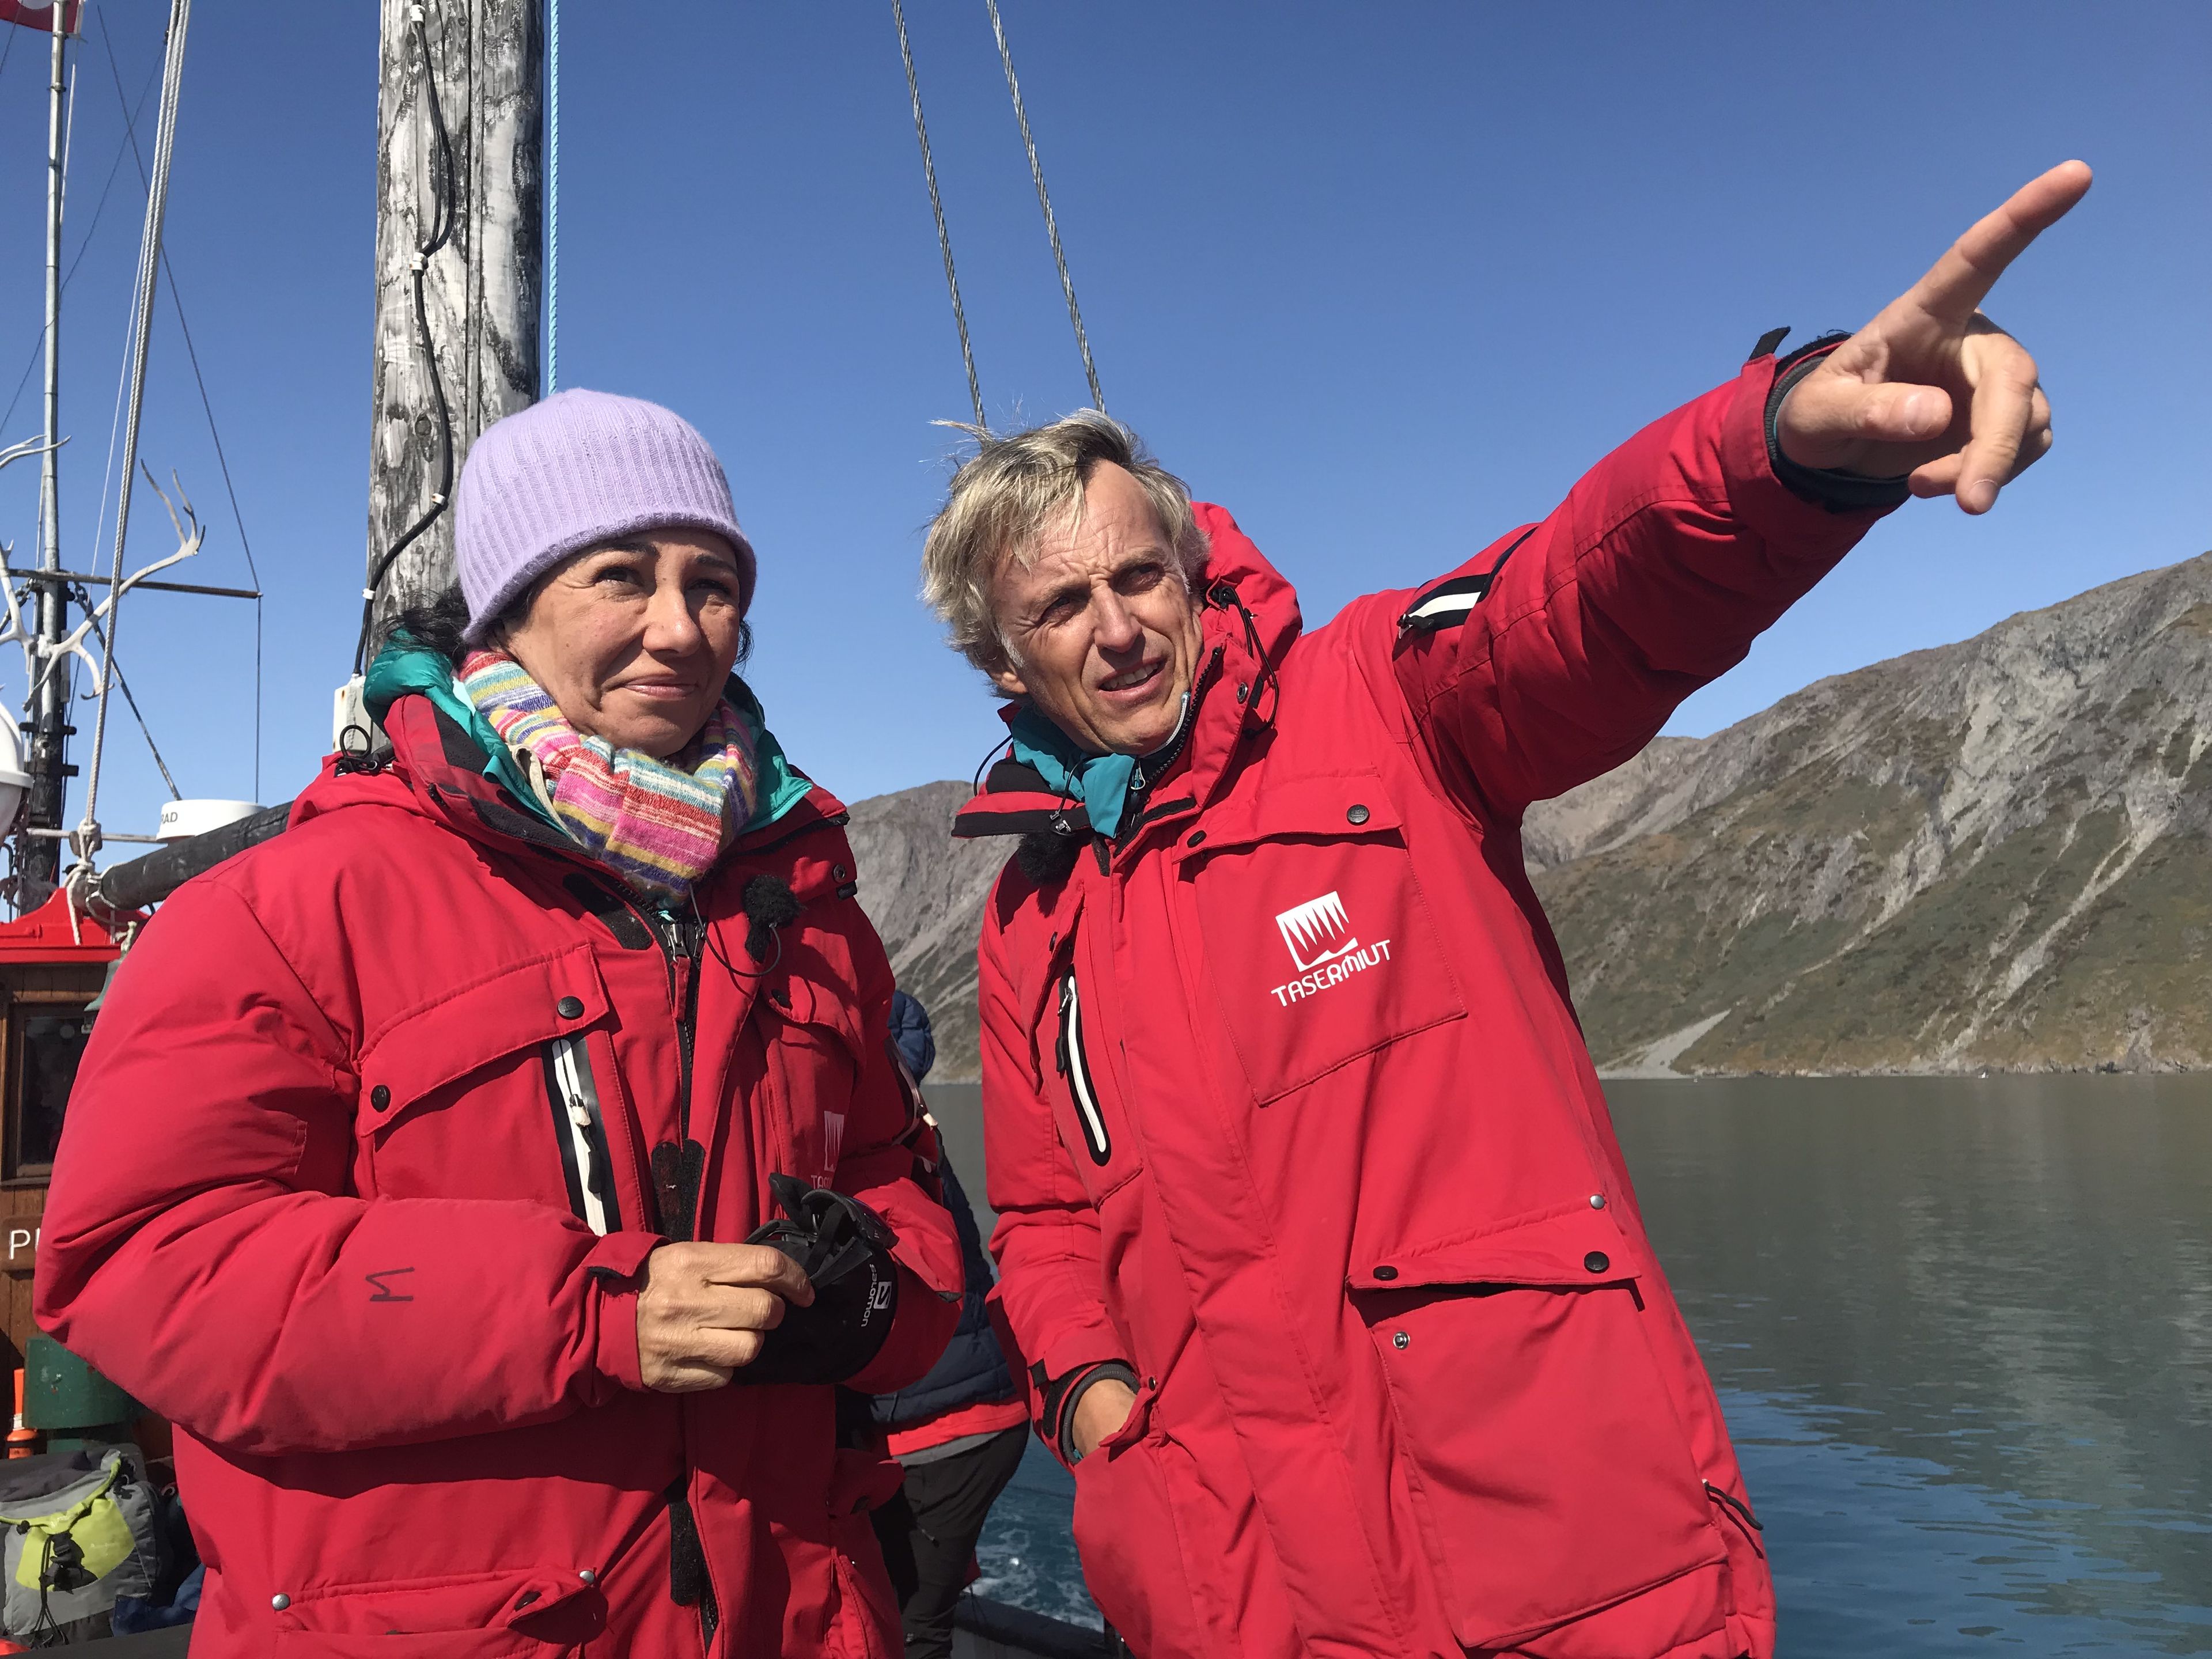 Ana Botín, presidenta de Santander, y el presentador Jesús Calleja en la grabación de su programa Planeta Calleja en Groenlandia.